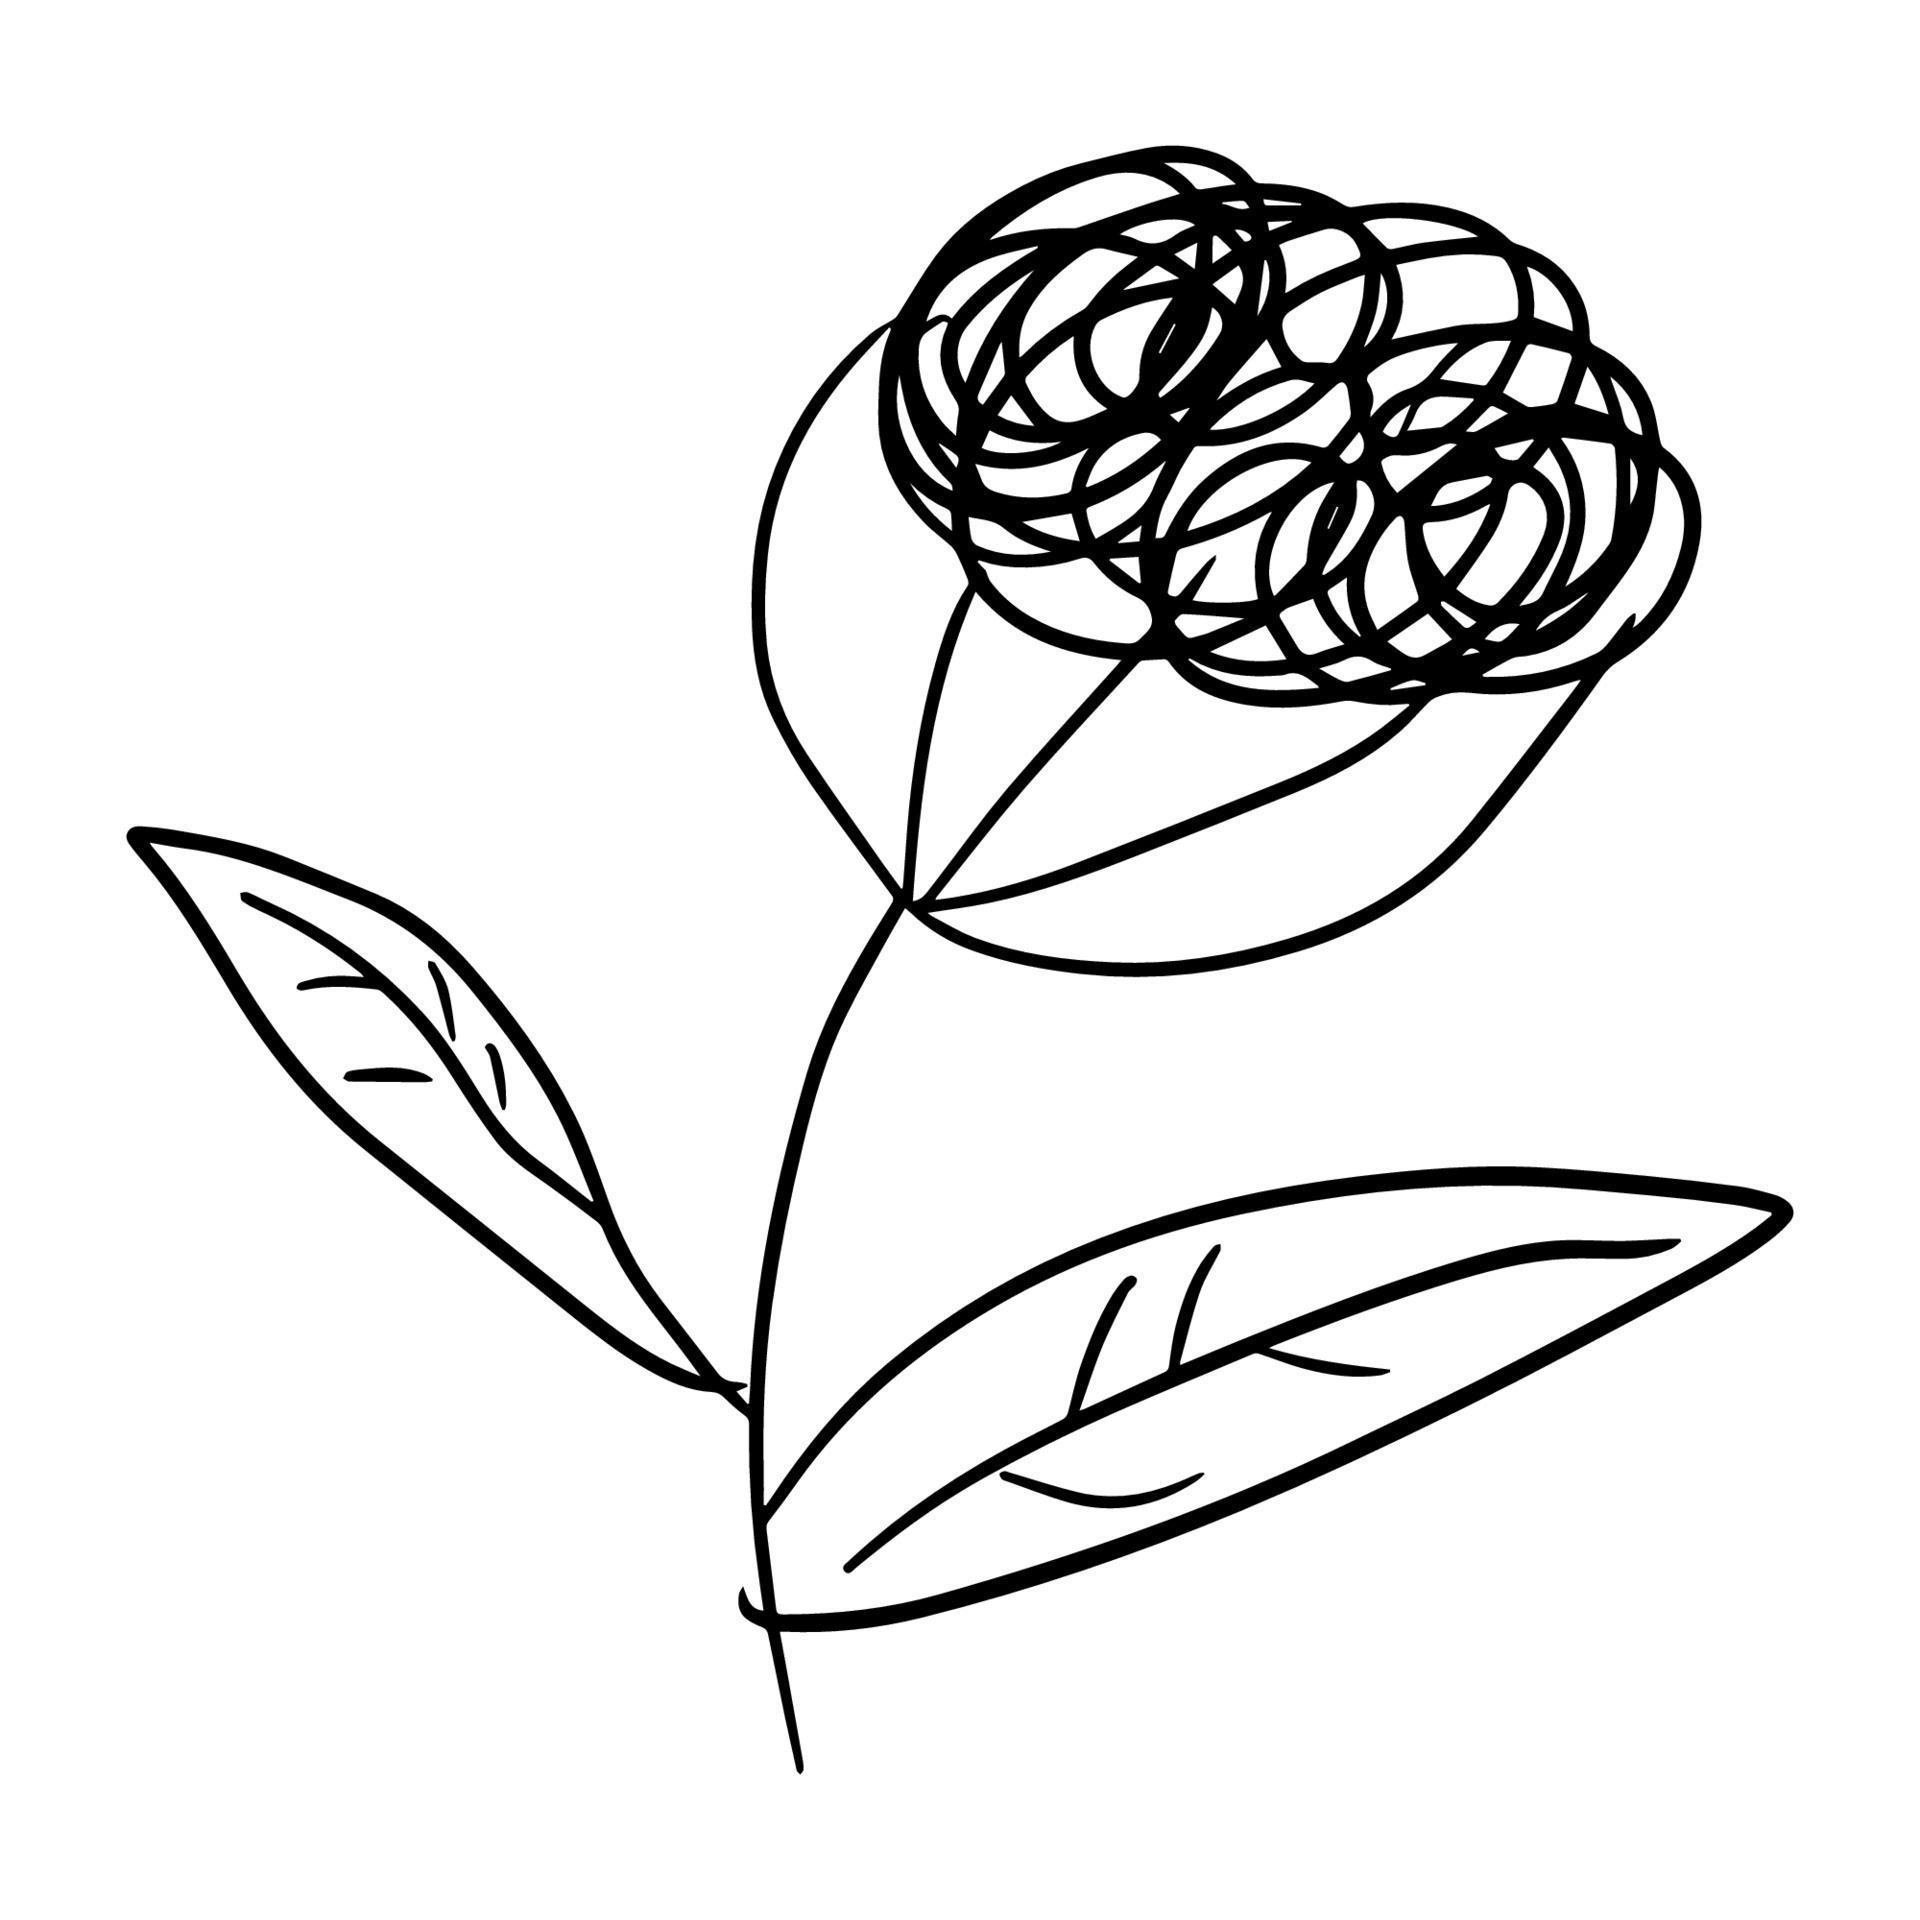 Flor colorida de la historieta del doodle de la fantasía aislada en el fondo blanco. vector